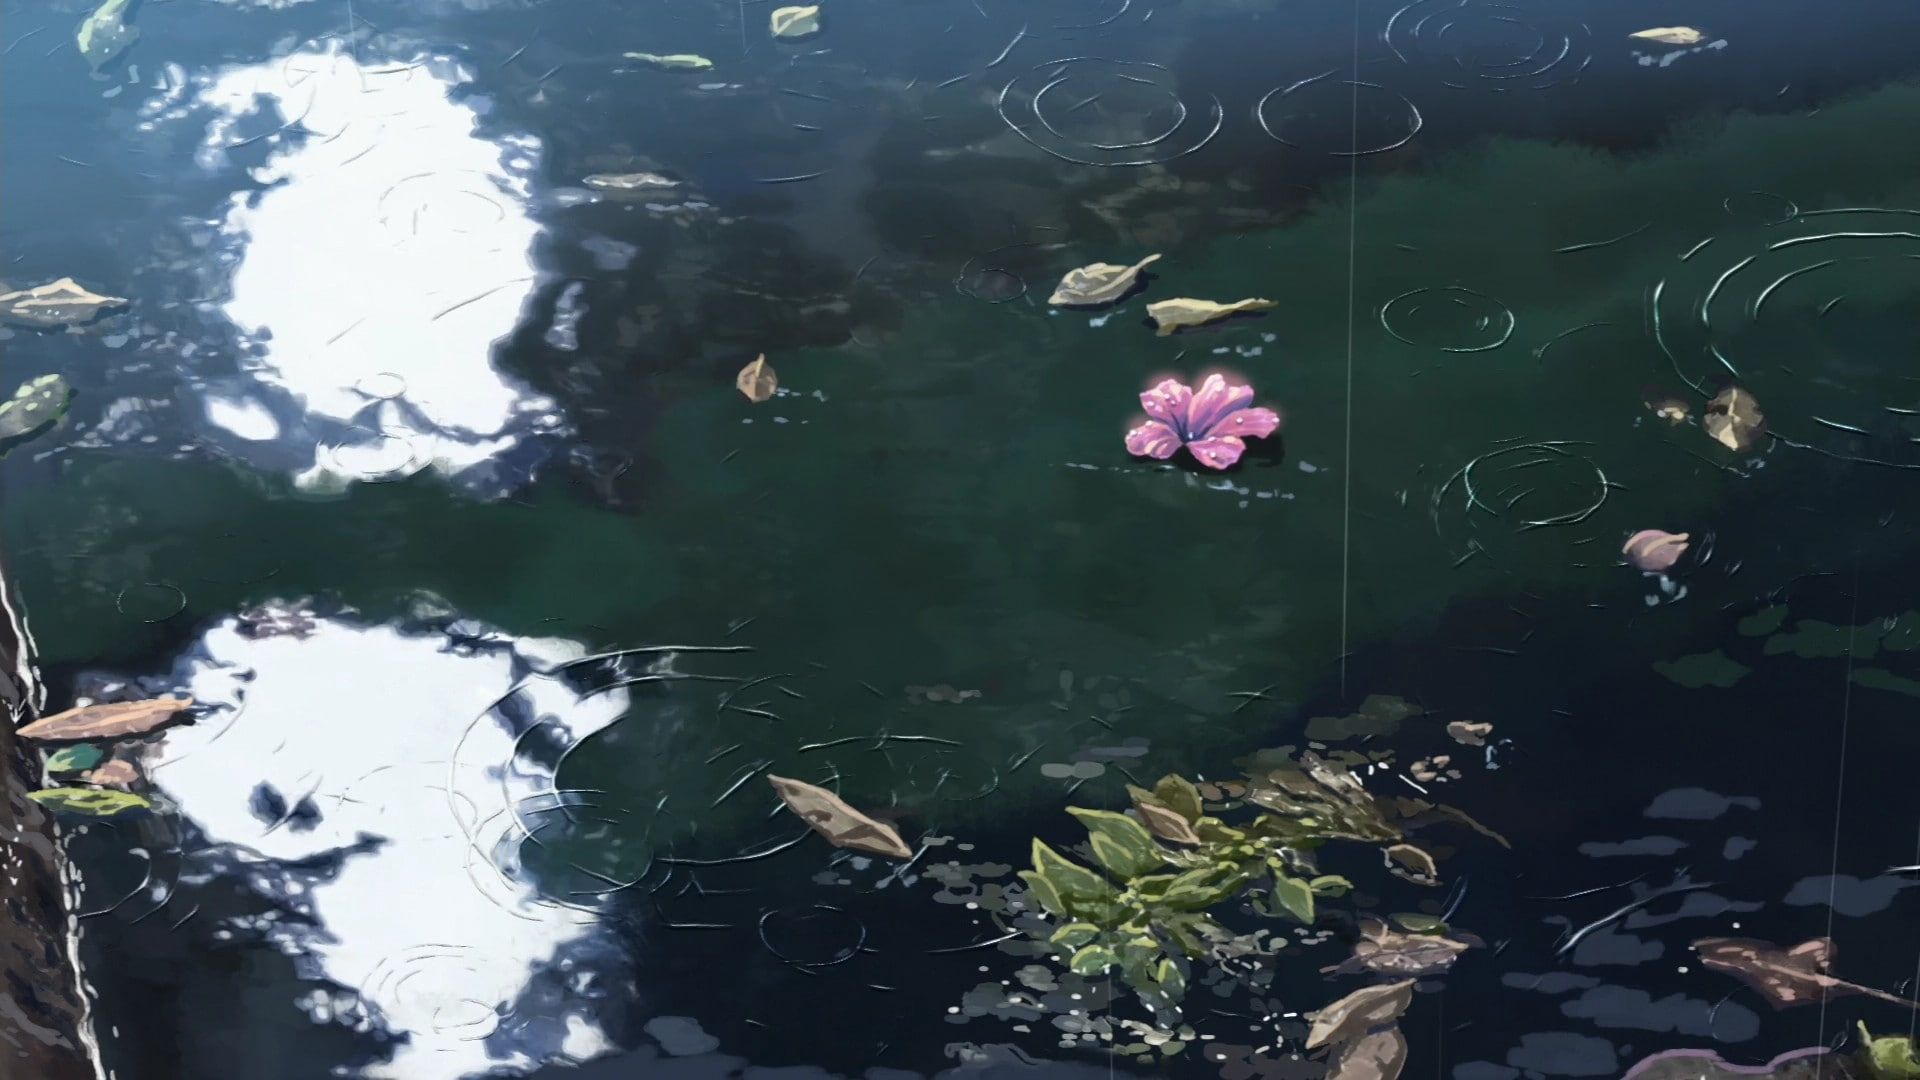 The Garden of Words #water #flowers Makoto Shinkai #sunlight #rain P # wallpaper #hdwallpaper #desk. Garden of words, Anime scenery wallpaper, Aesthetic anime